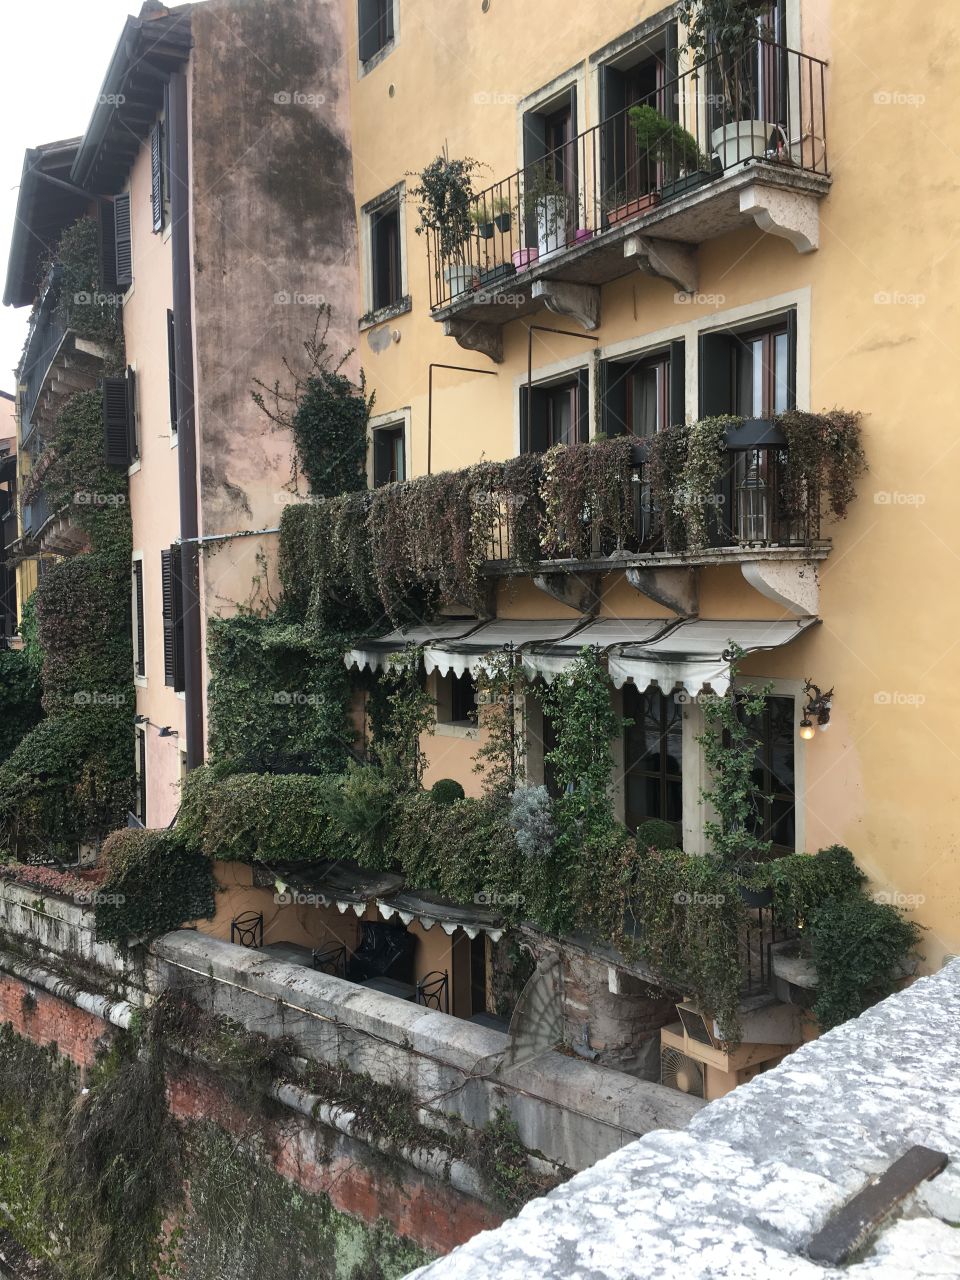 Riverside house, Verona